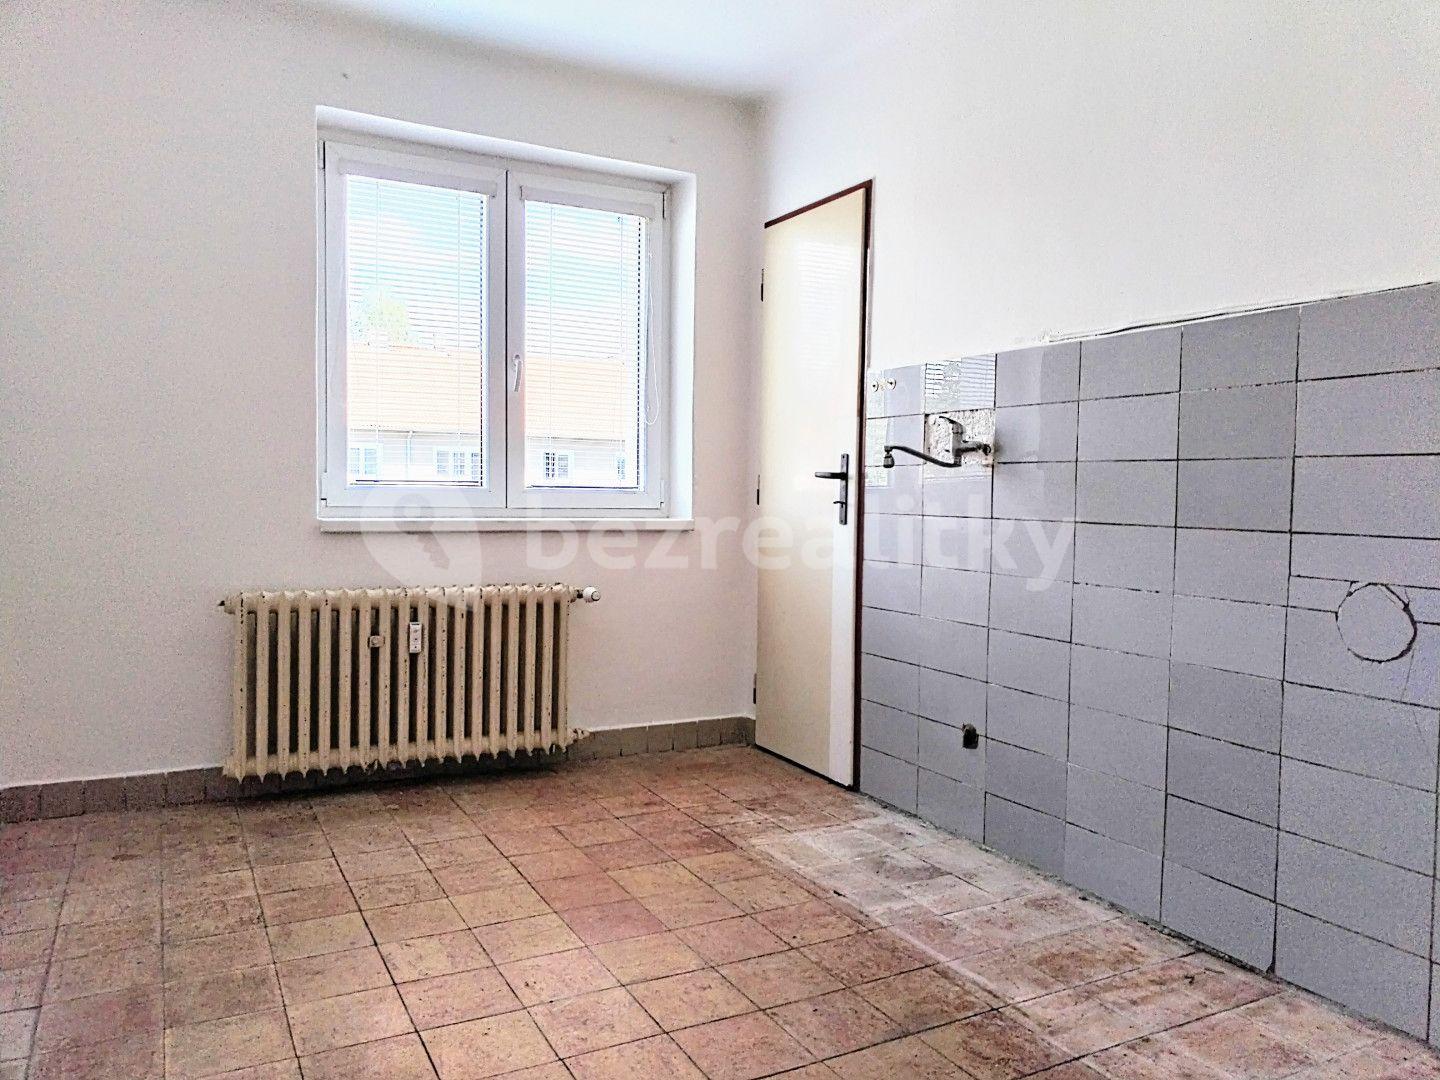 2 bedroom flat for sale, 57 m², Družstevní, Týnec nad Sázavou, Středočeský Region